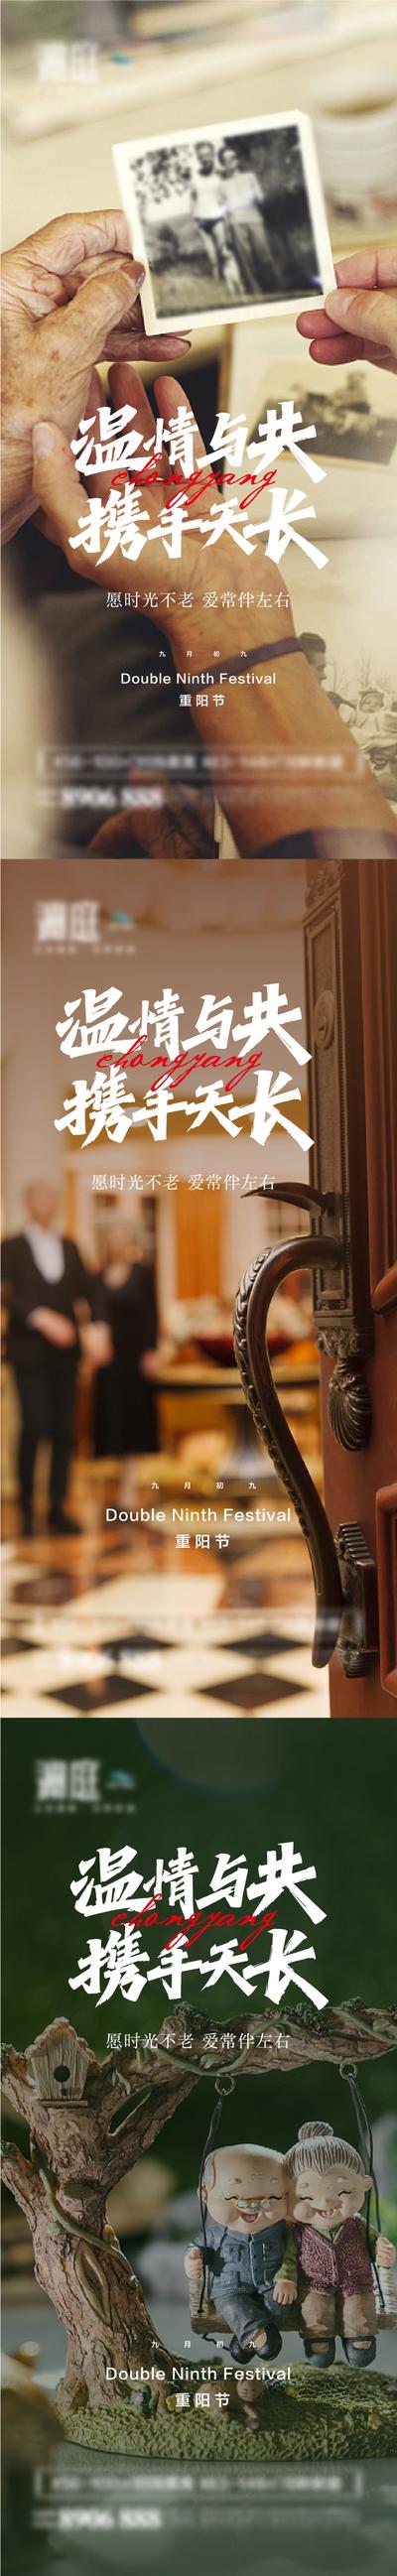 南门网 海报 中国传统节日 重阳节 老人 父母  温暖 关爱 怀旧 系列